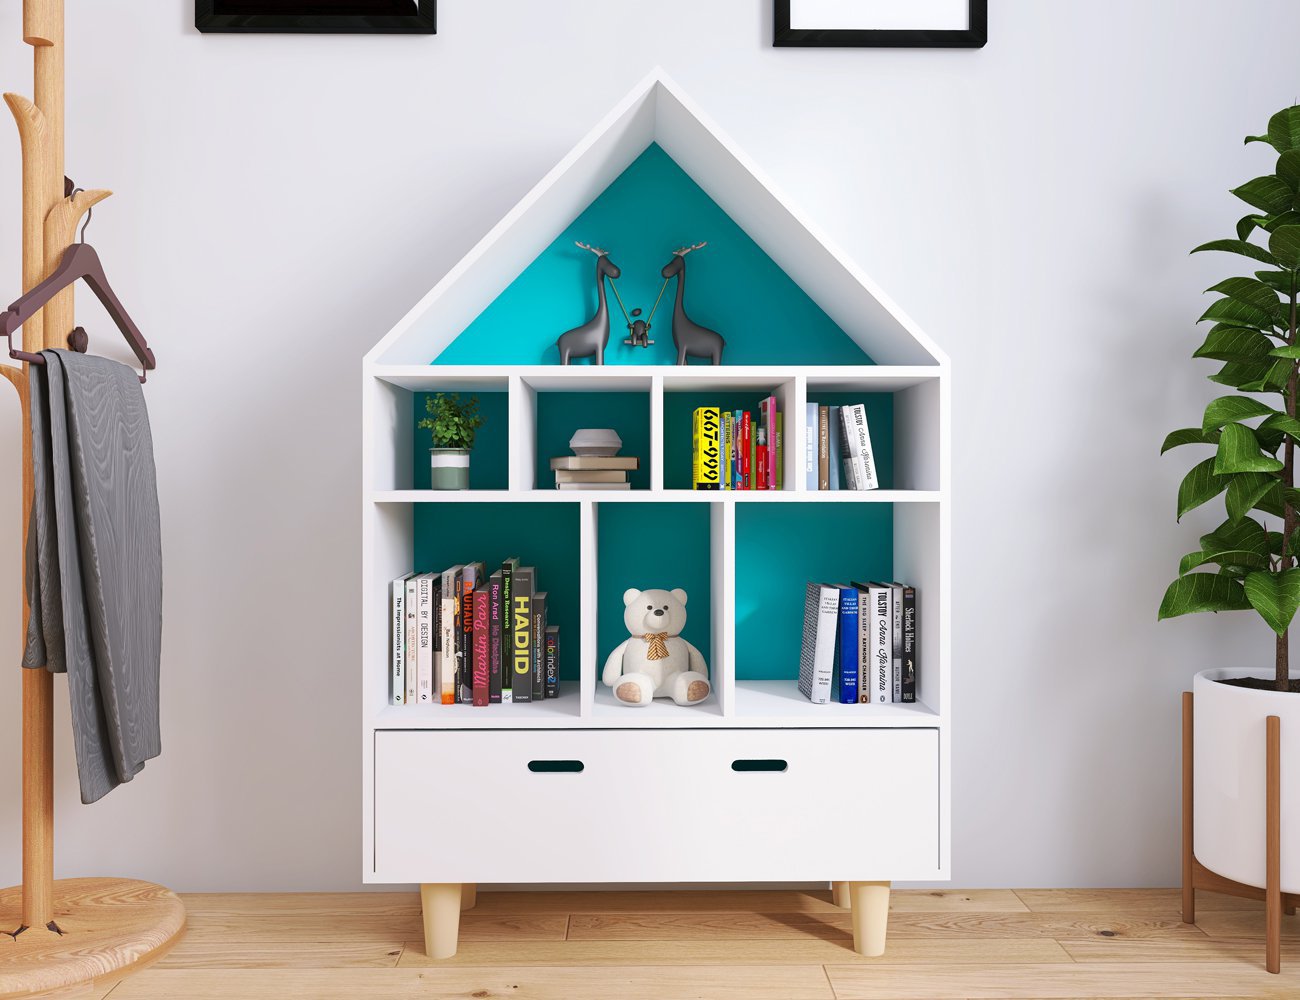 House-Shaped Bookshelf Storage Unit